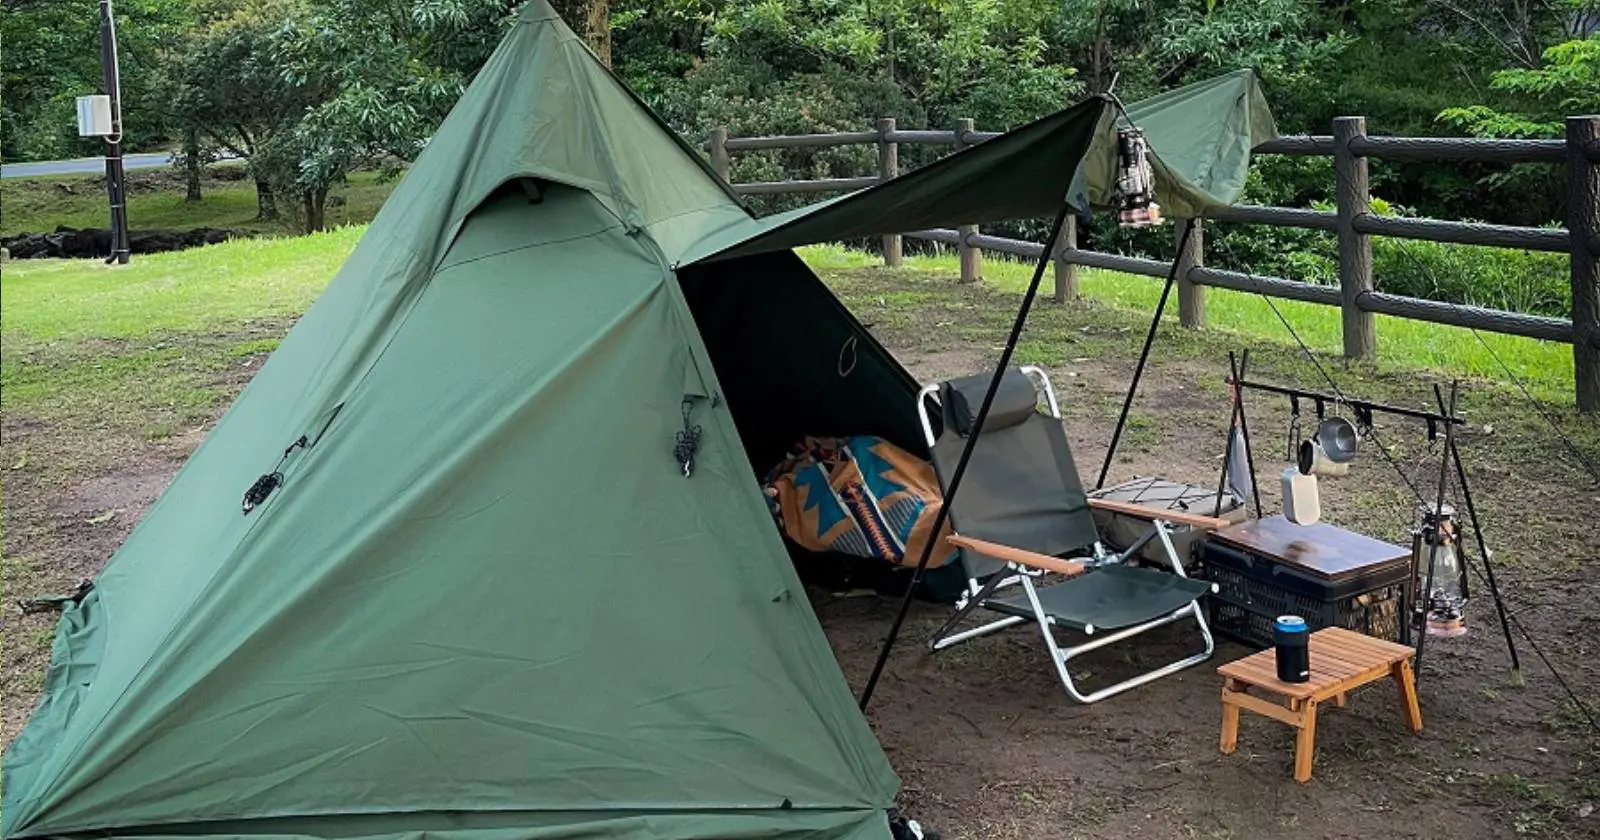 Dod ムシャテントはソロキャンプの強い味方 設営が簡単なソロ用2ルームワンポールテント キャンプ アウトドアのtakibi タキビ